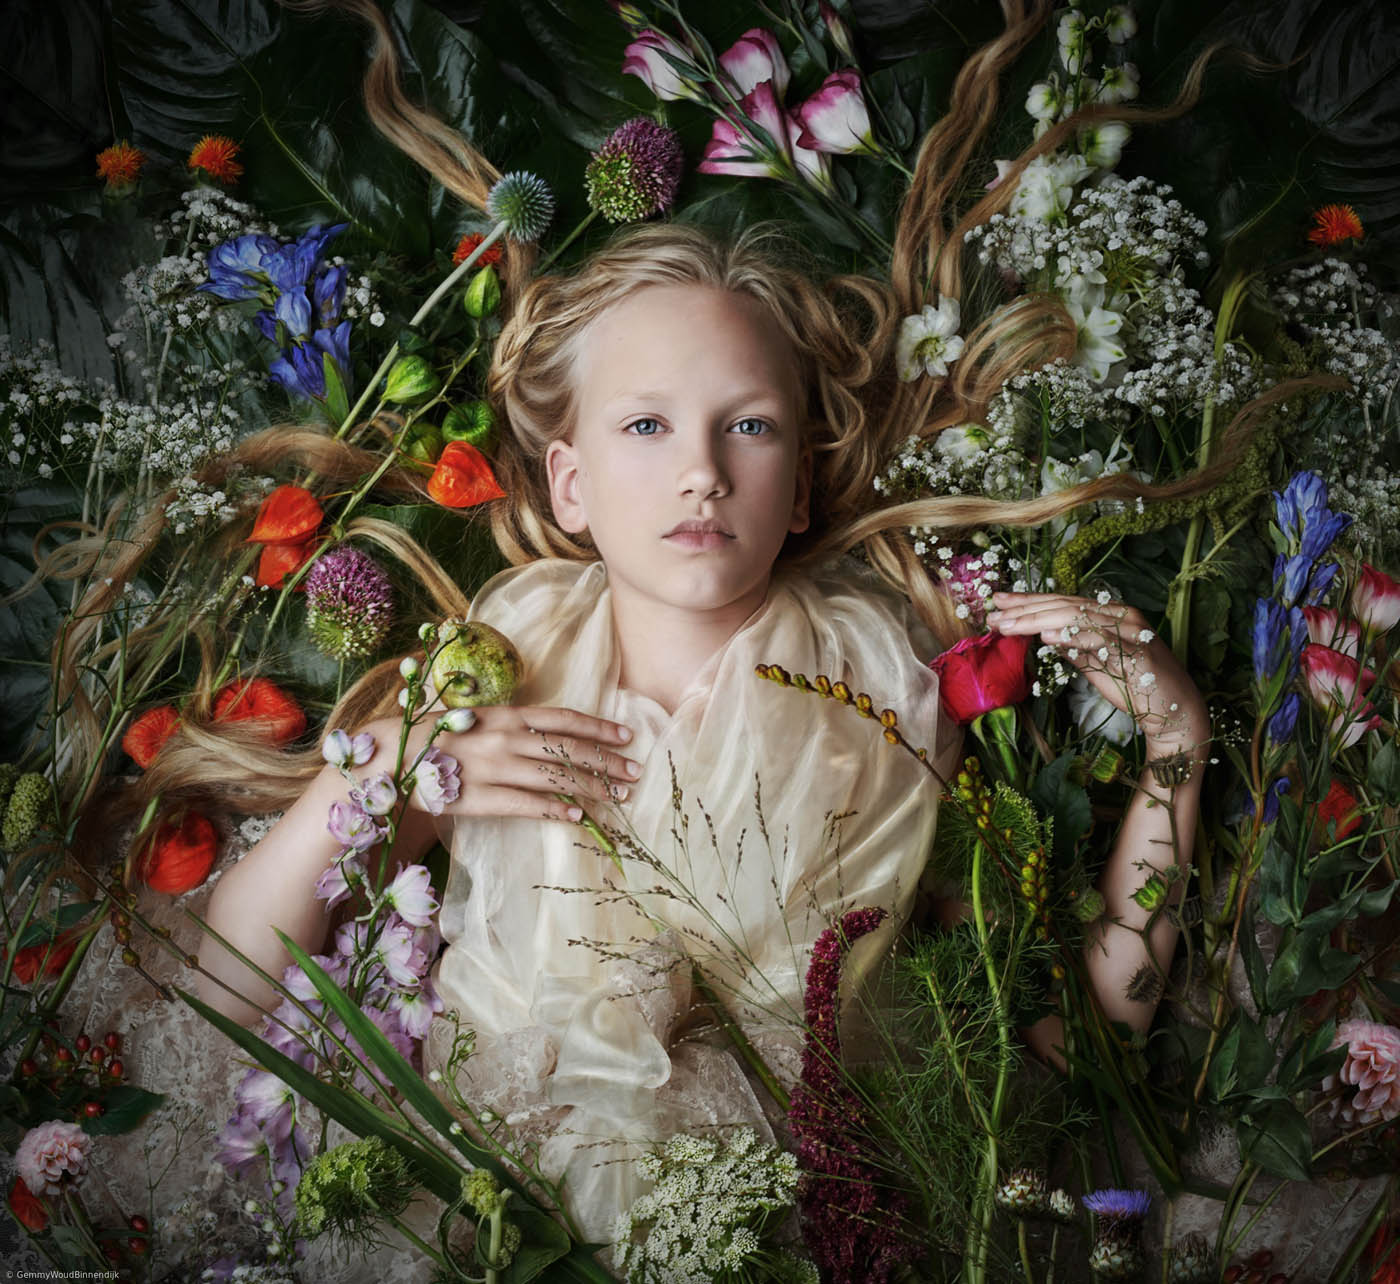 portrait photography kid with flowers by gemmy woud binnendijk